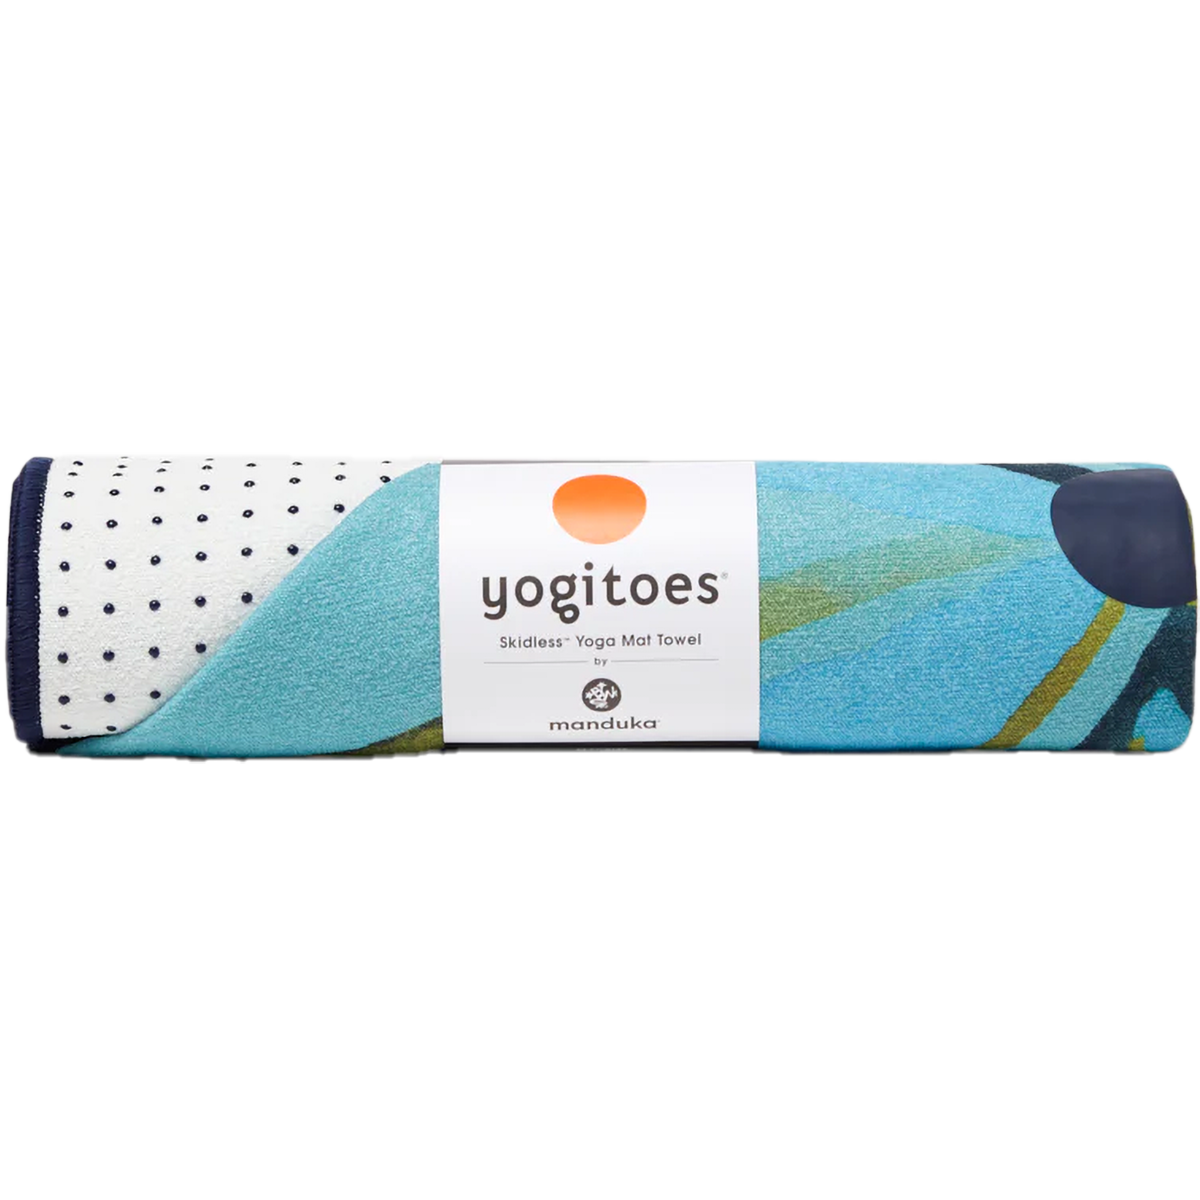 Yogitoes Yoga Towel alternate view